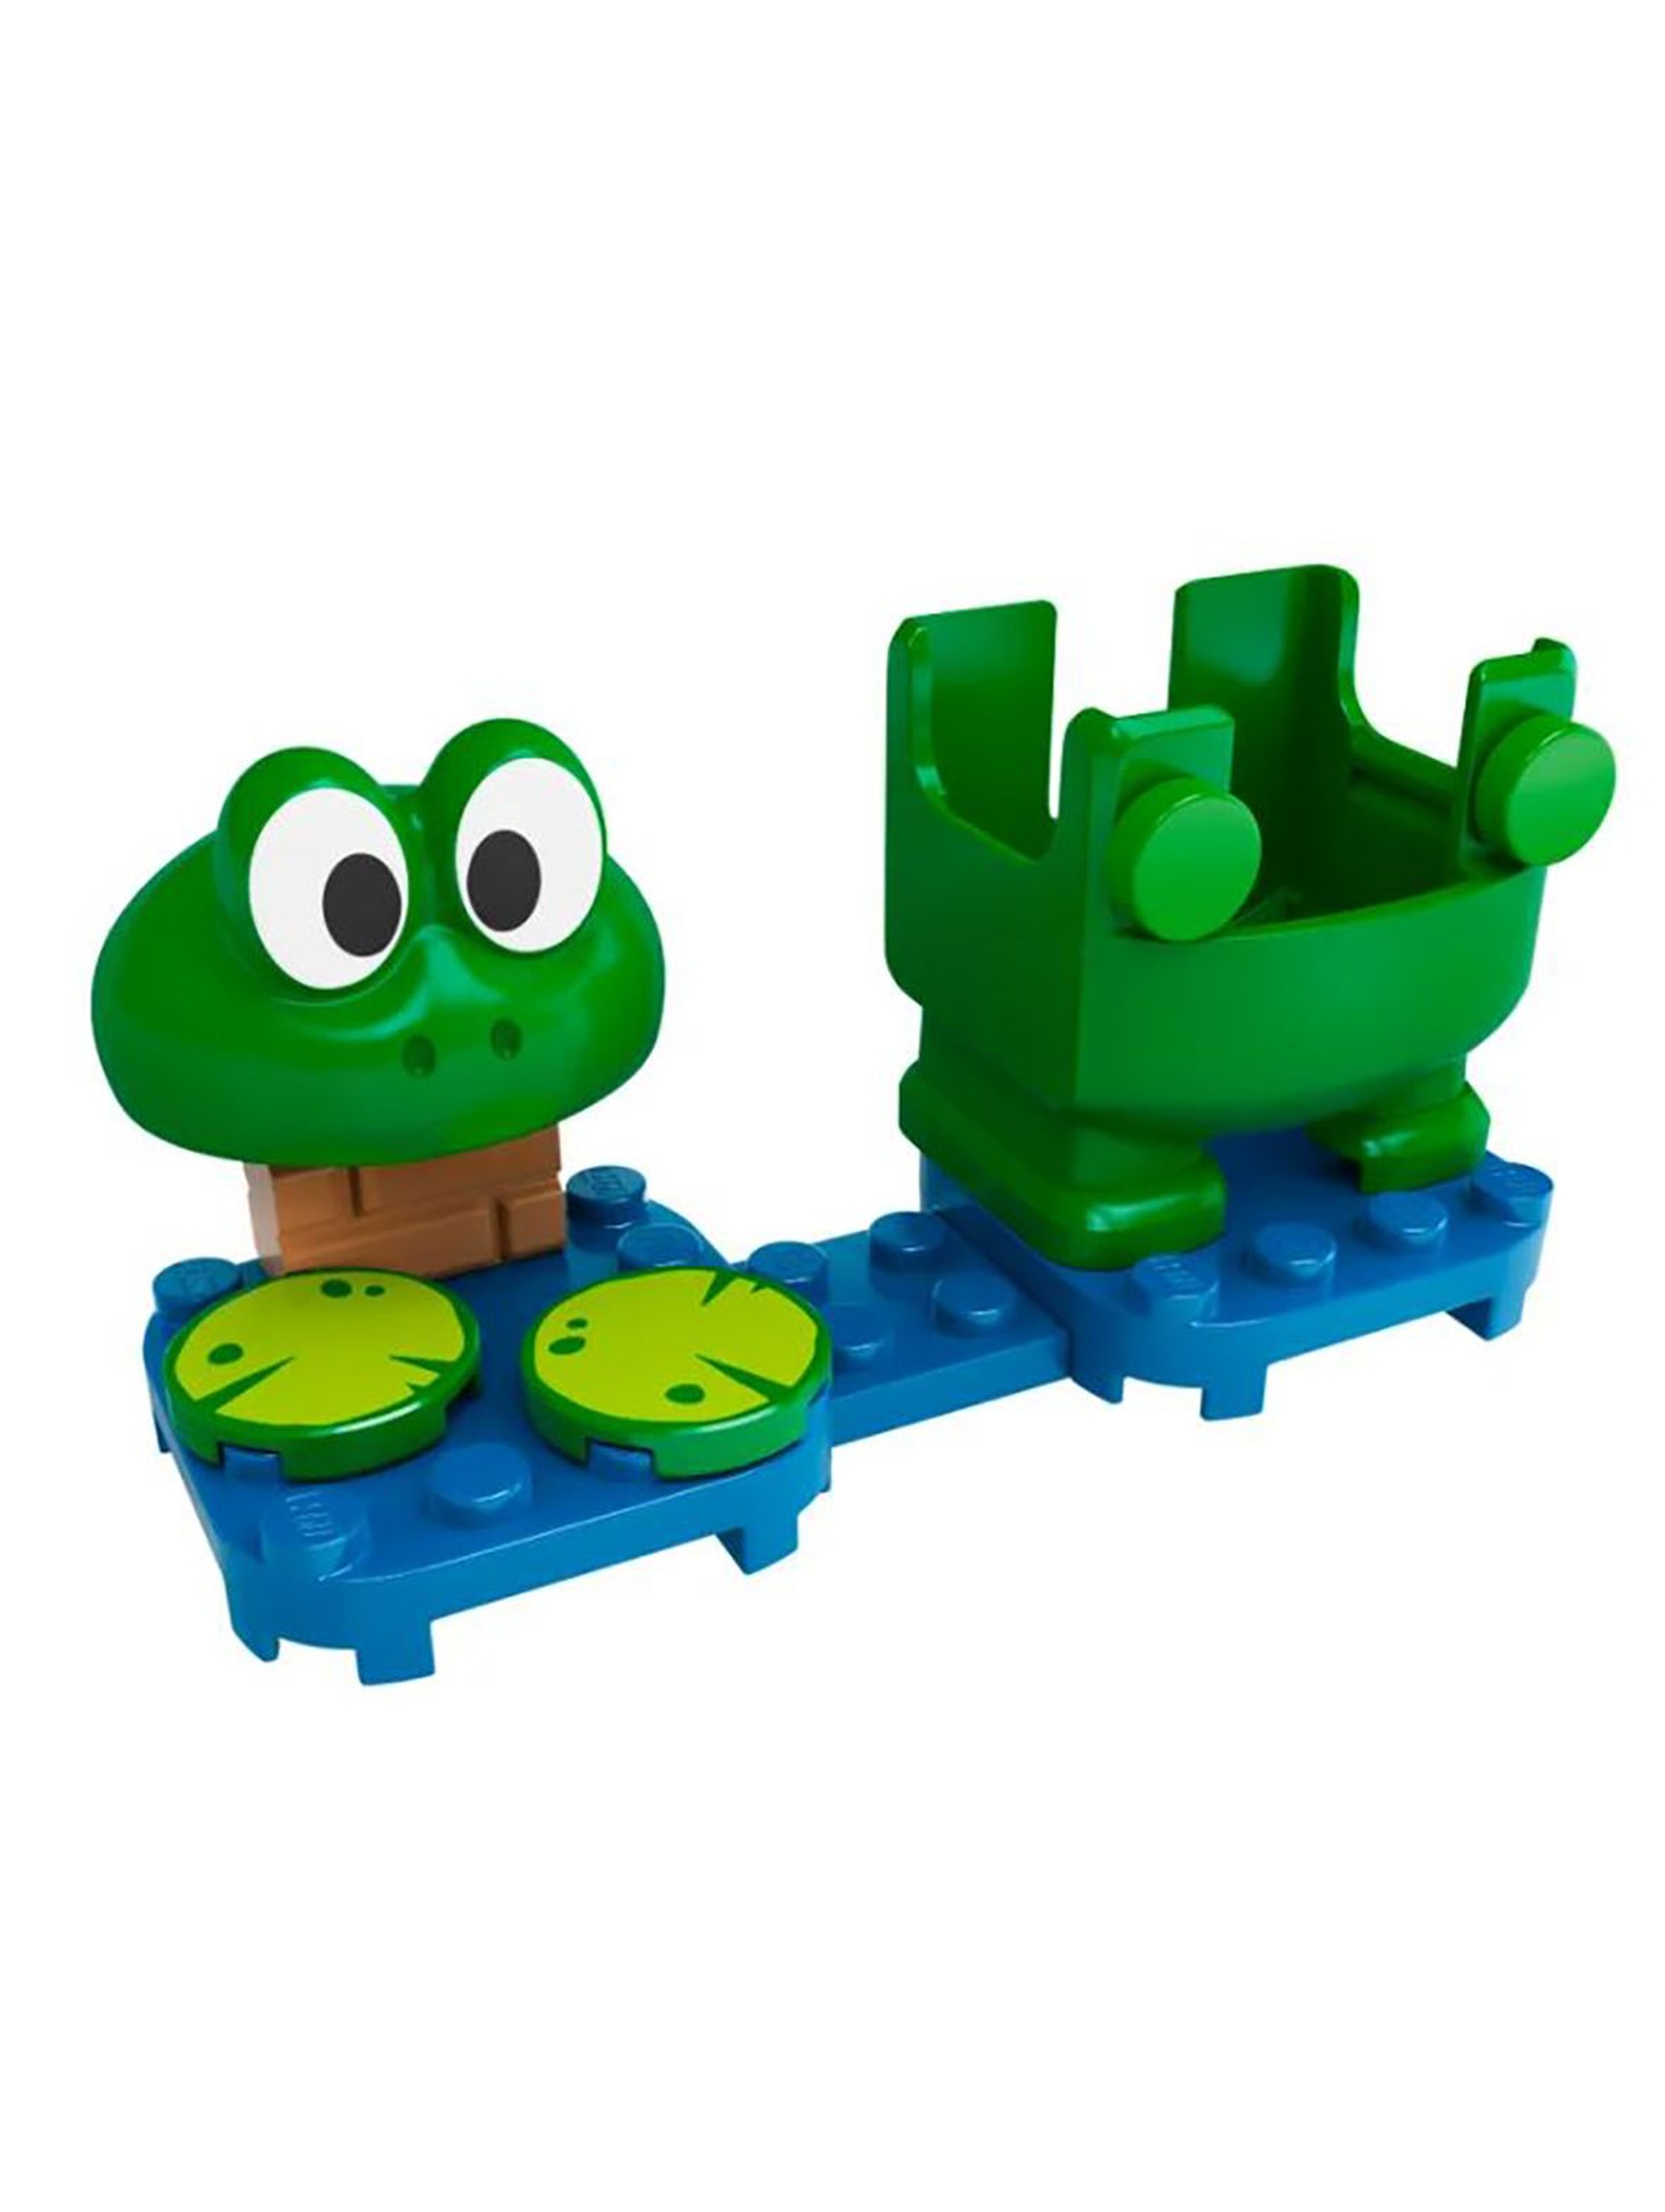 LEGO® Super Mario żaba — ulepszenie 71392